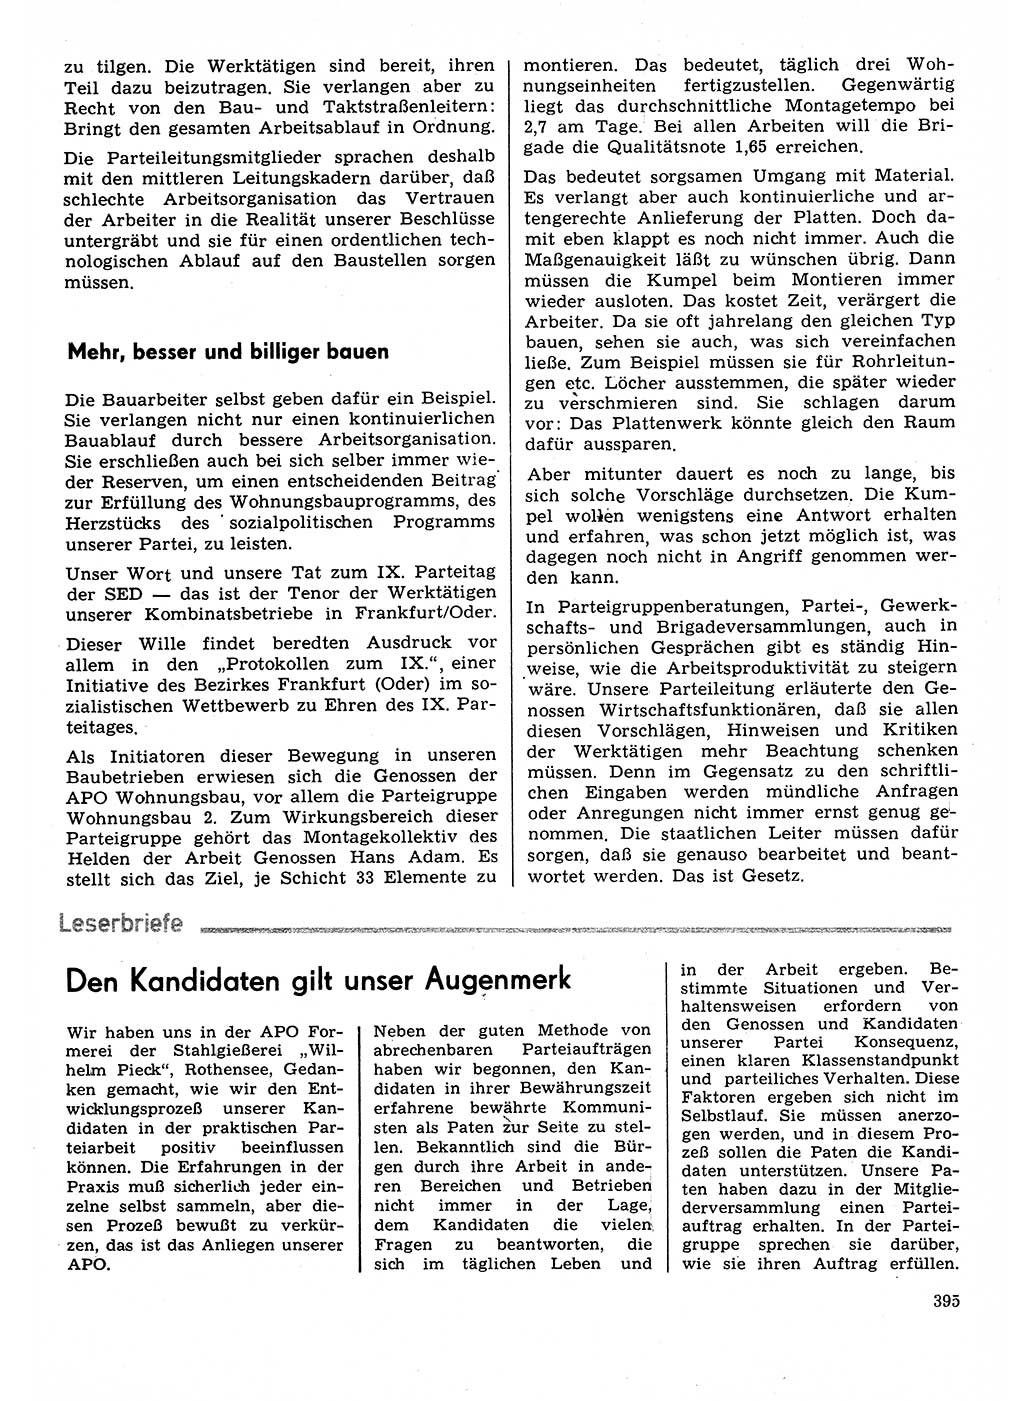 Neuer Weg (NW), Organ des Zentralkomitees (ZK) der SED (Sozialistische Einheitspartei Deutschlands) für Fragen des Parteilebens, 31. Jahrgang [Deutsche Demokratische Republik (DDR)] 1976, Seite 395 (NW ZK SED DDR 1976, S. 395)